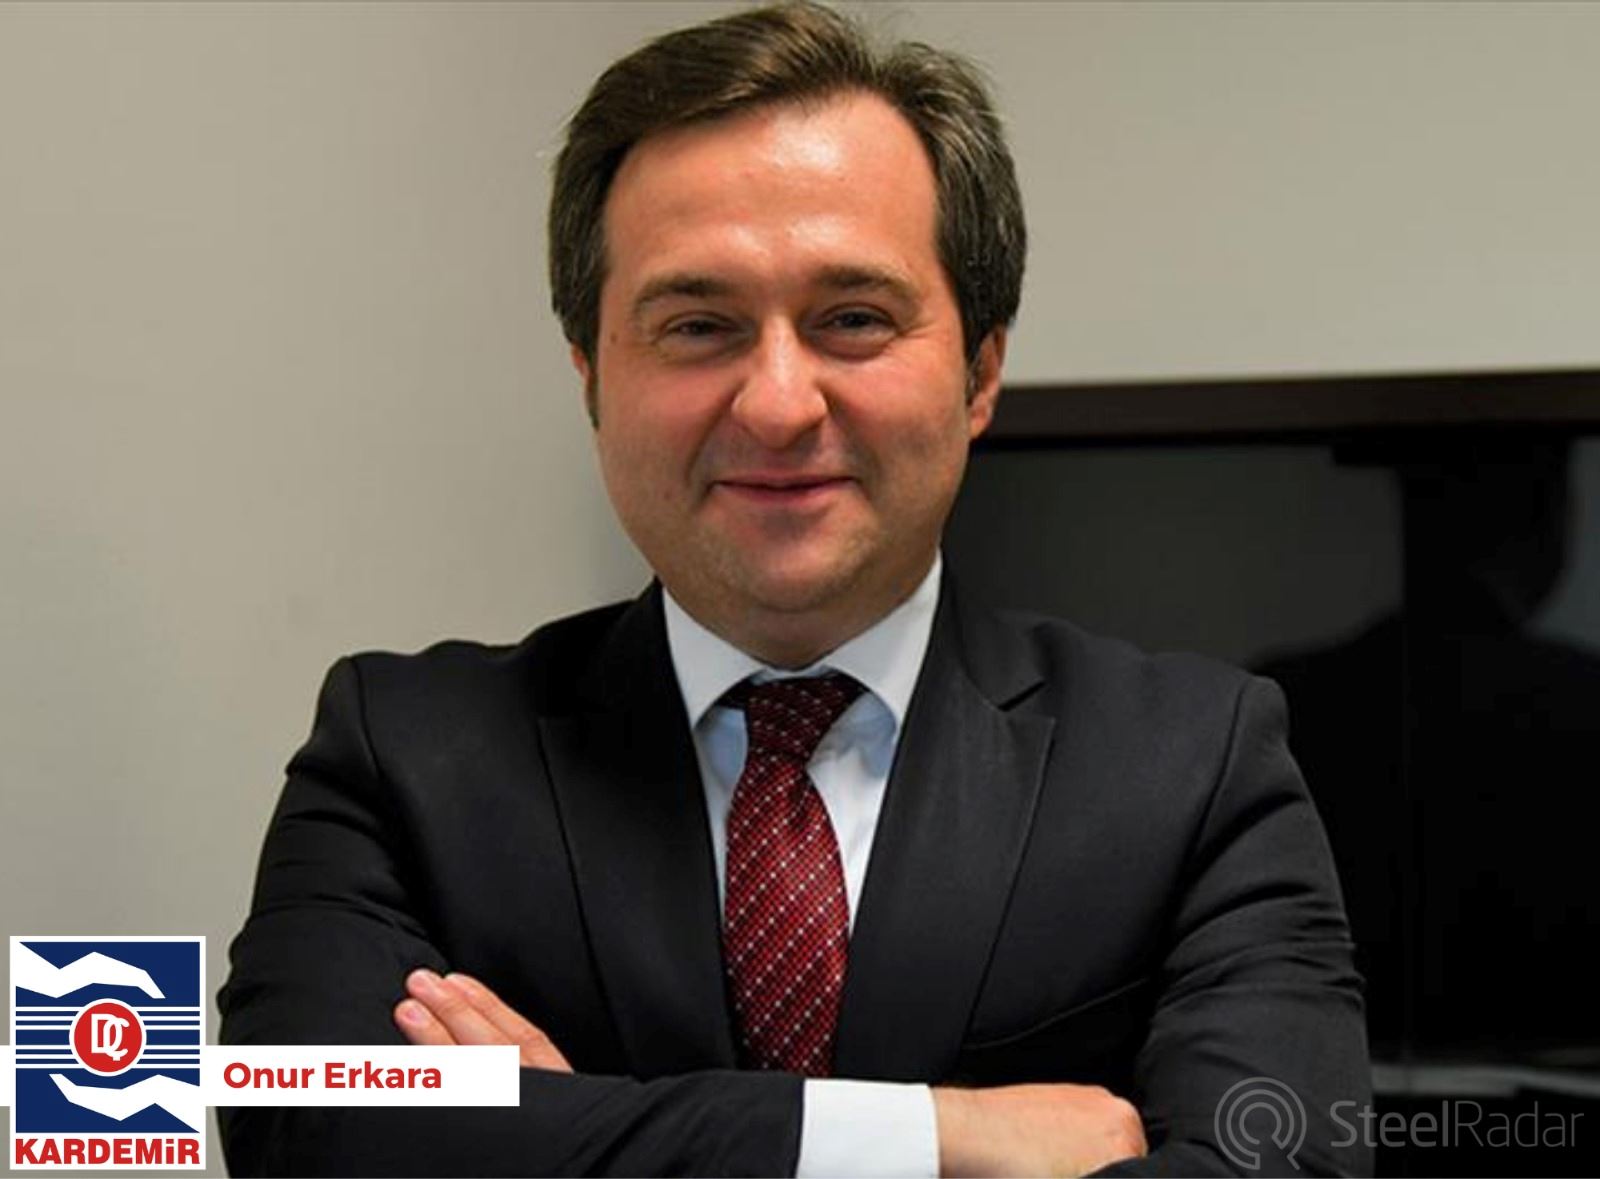 KARDEMİR Satış ve Pazarlama Genel Müdür Yardımcılığına vekaleten Onur Erkara getirildi